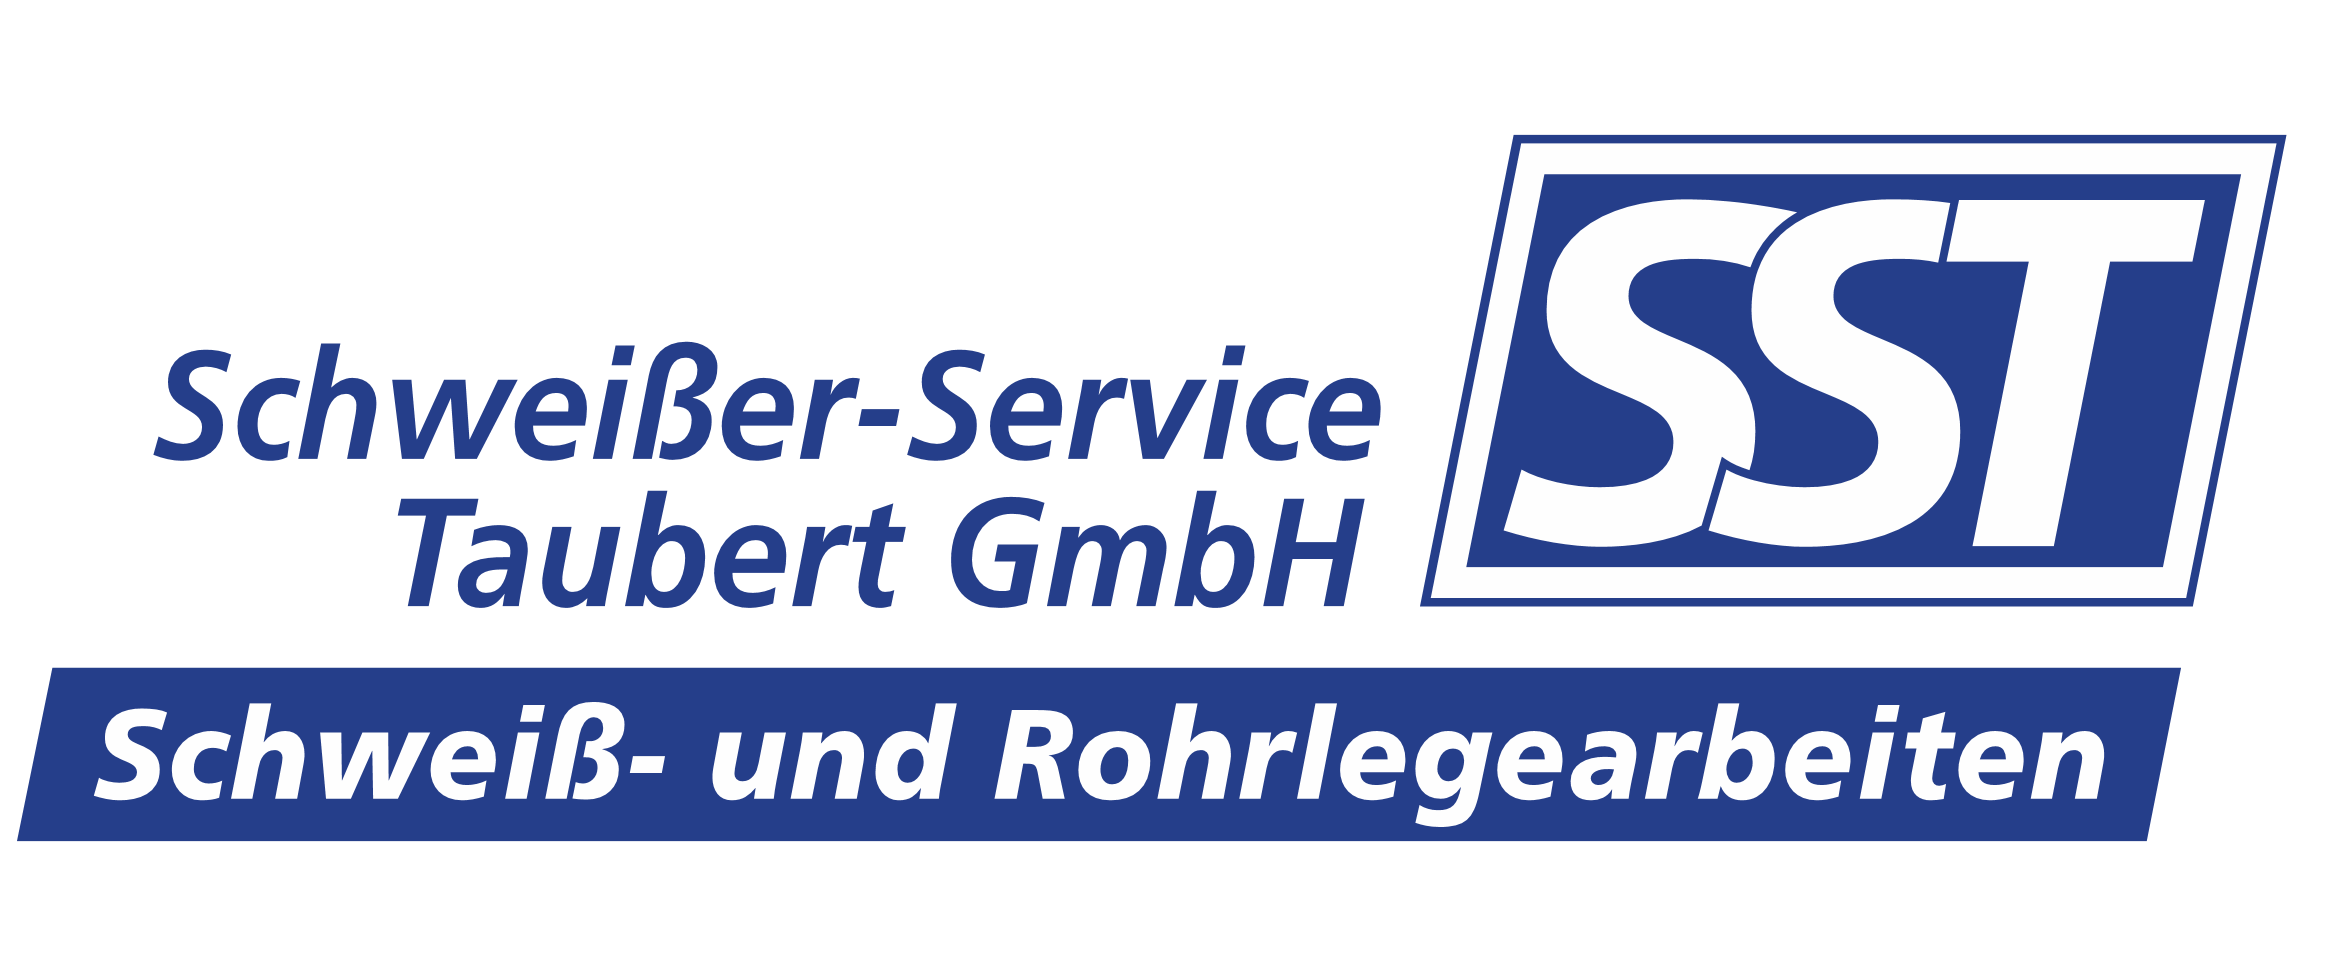 Schweißer-Service Taubert GmbH